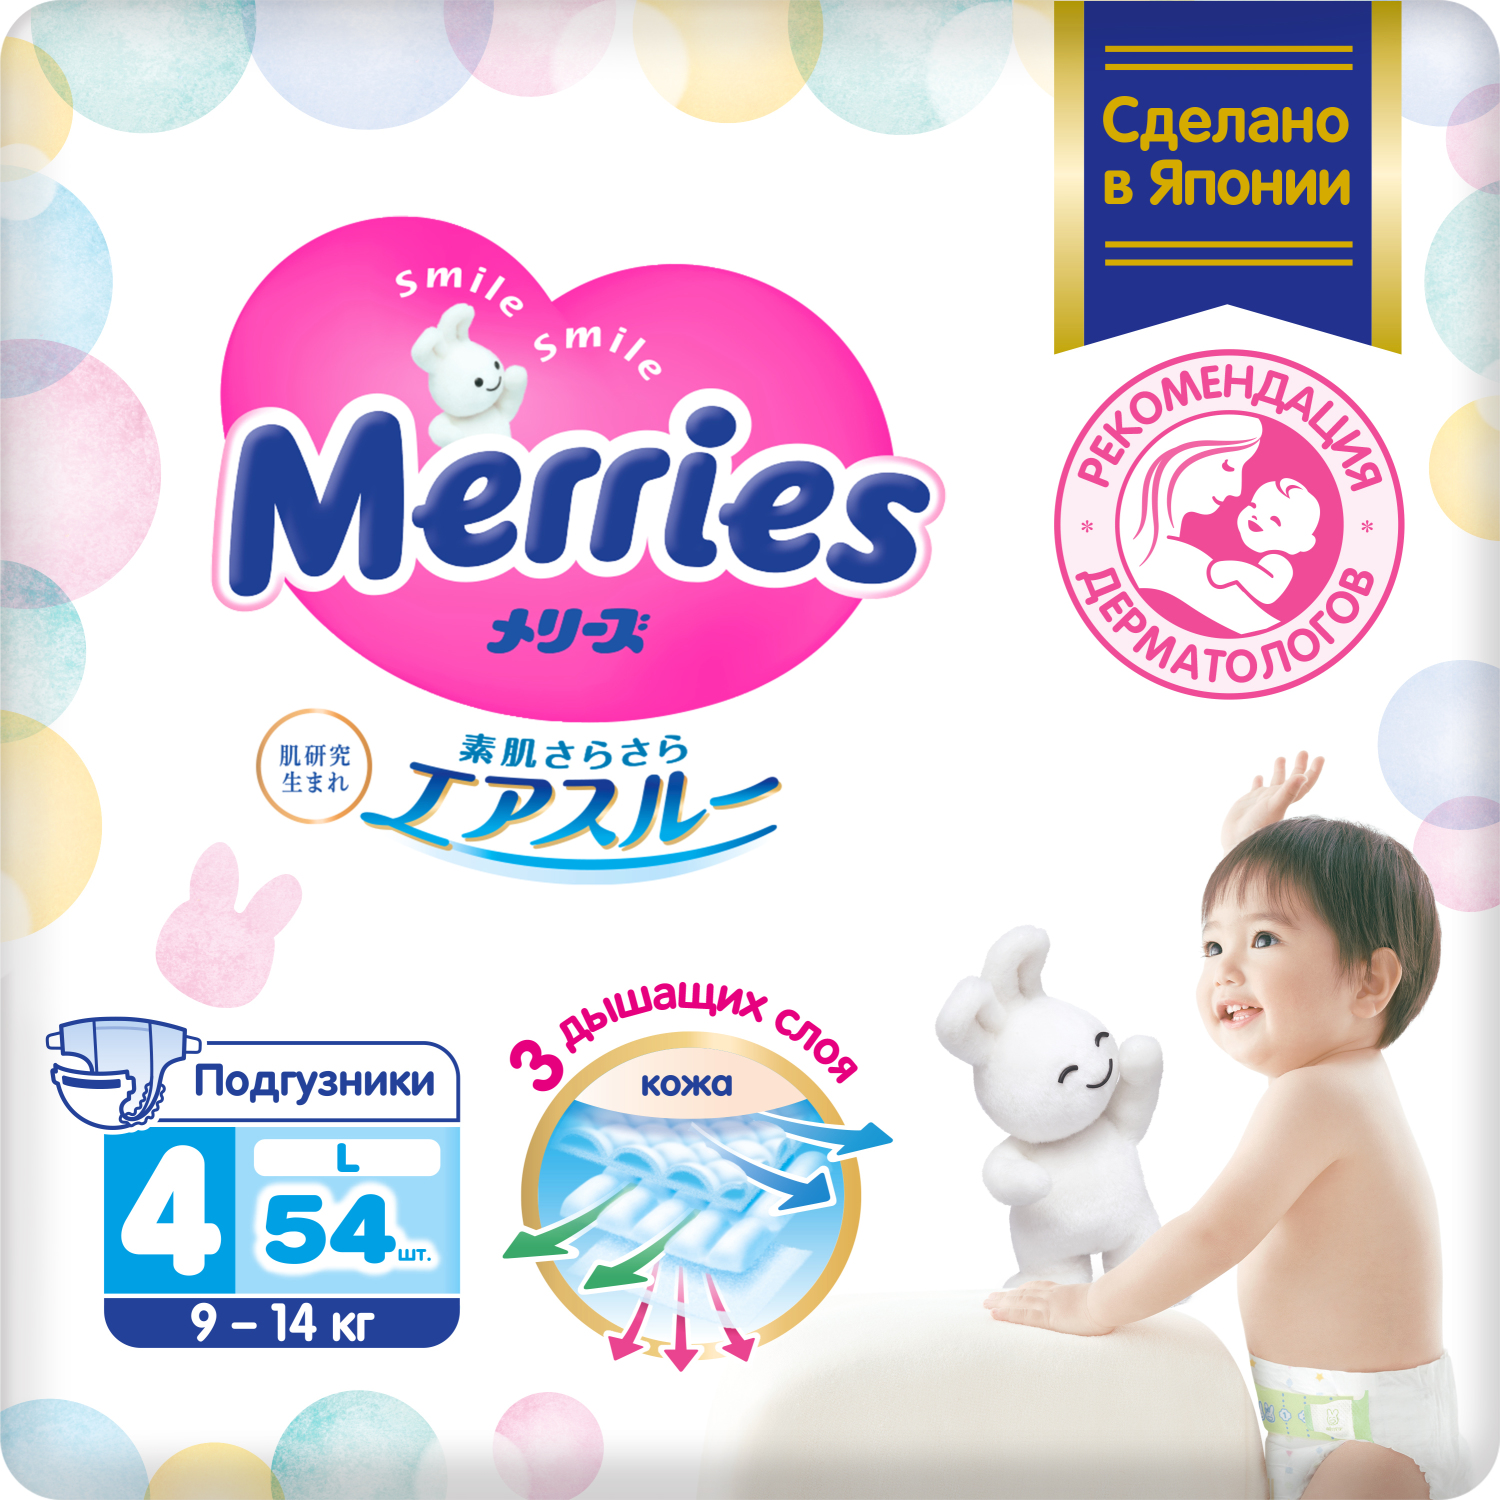 цена Подгузники Merries для детей размер L 9-14 кг 54 шт